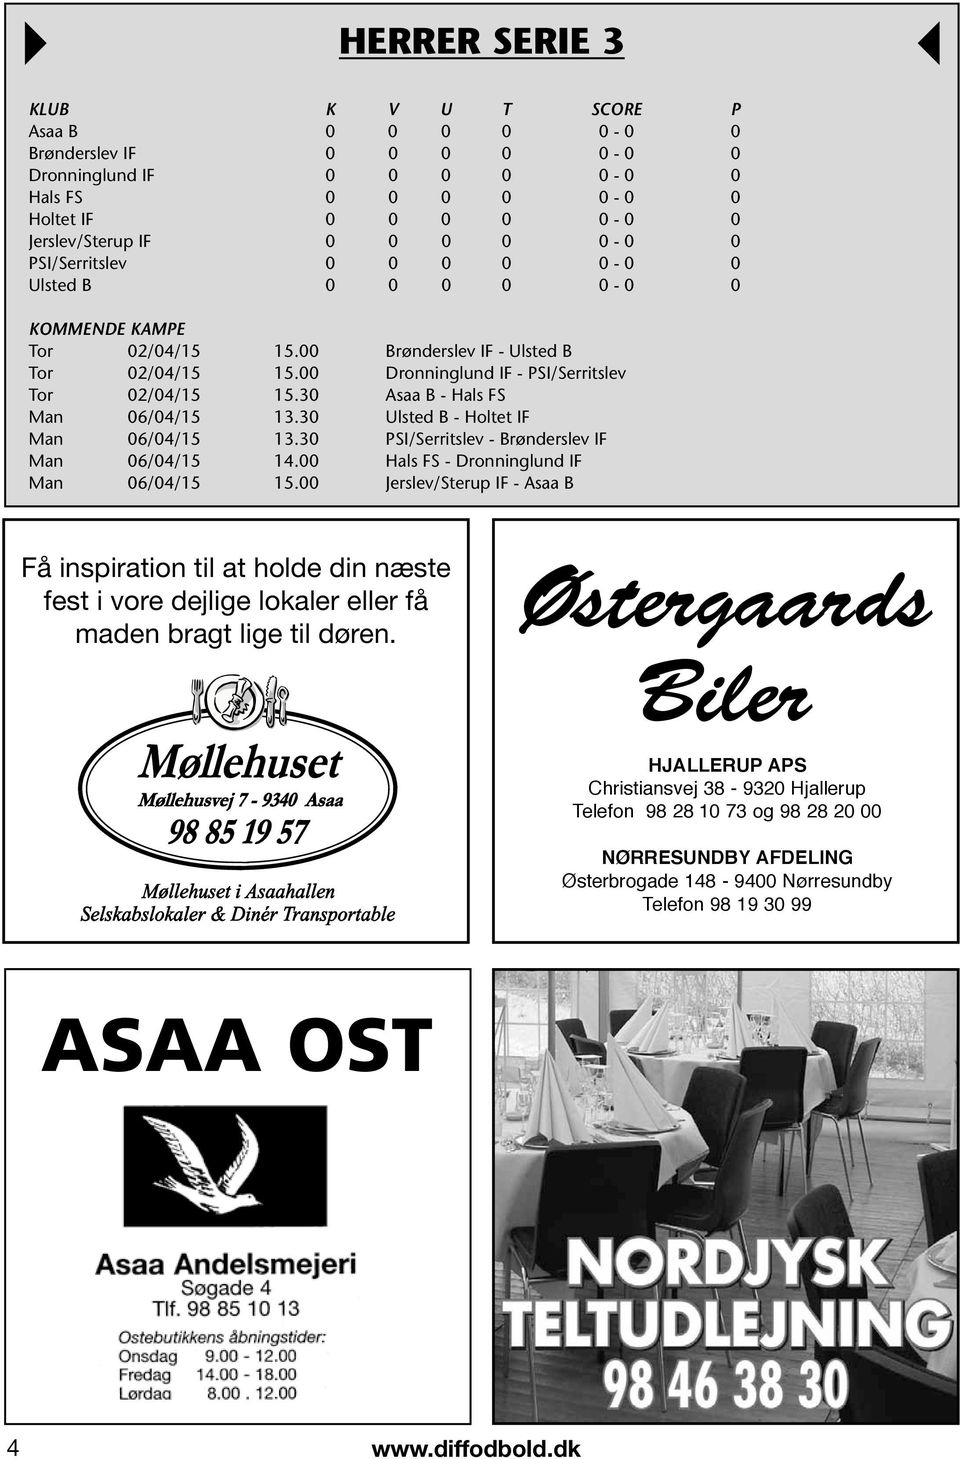 30 Asaa B - Hals FS Man 06/04/15 13.30 Ulsted B - Holtet IF Man 06/04/15 13.30 PSI/Serritslev - Brønderslev IF Man 06/04/15 14.00 Hals FS - Dronninglund IF Man 06/04/15 15.